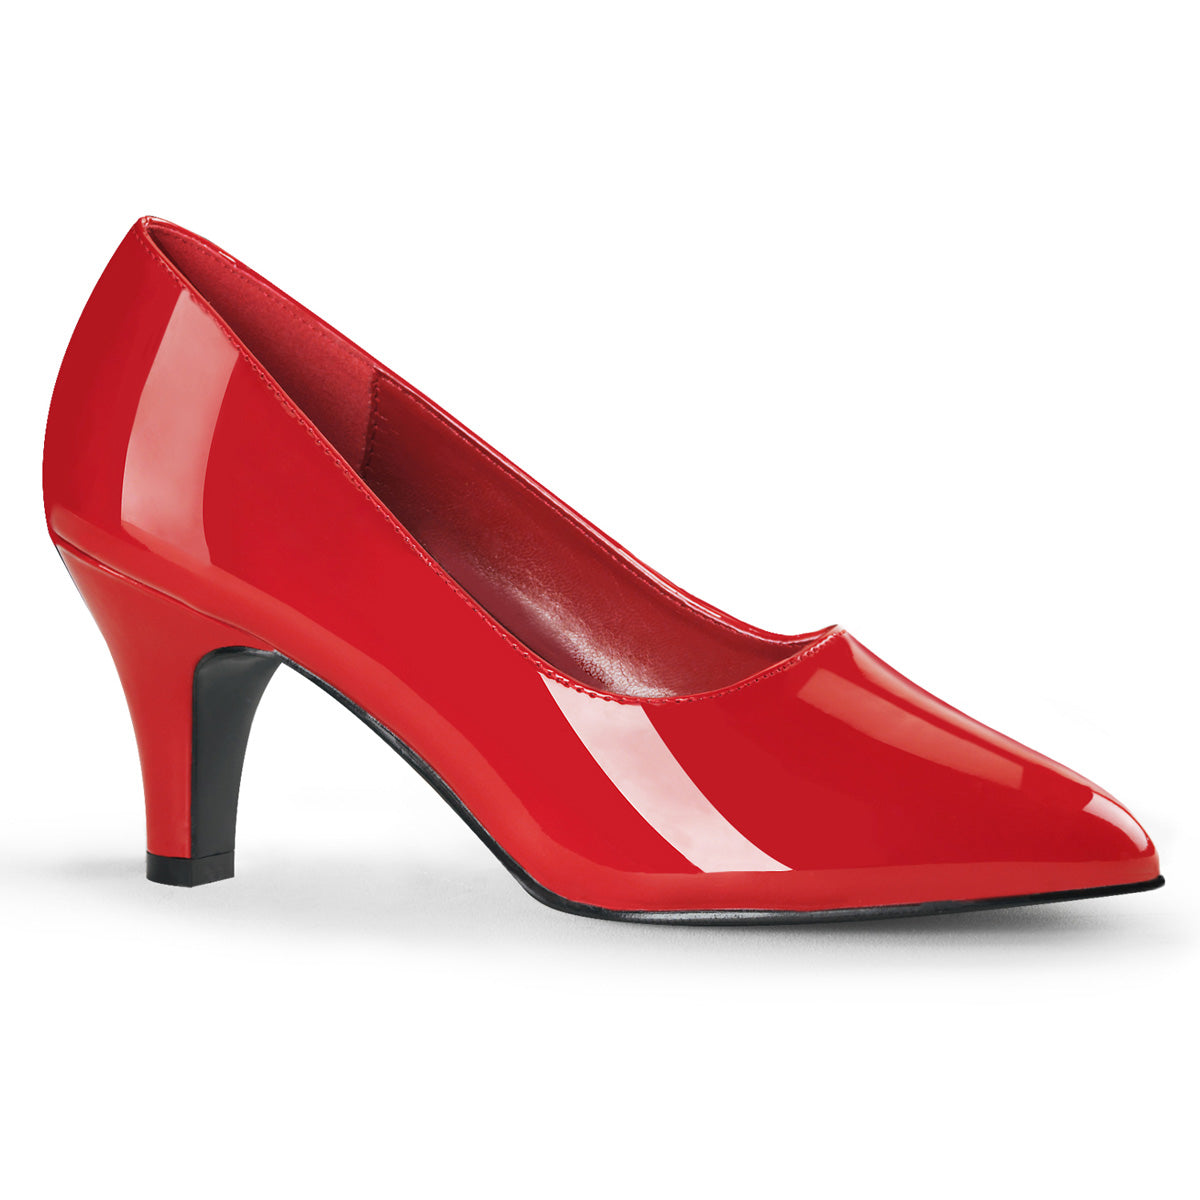 DIVINE-420 Pleaser Large Size Ladies Shoes 3" Heel Red Fetish Footwear